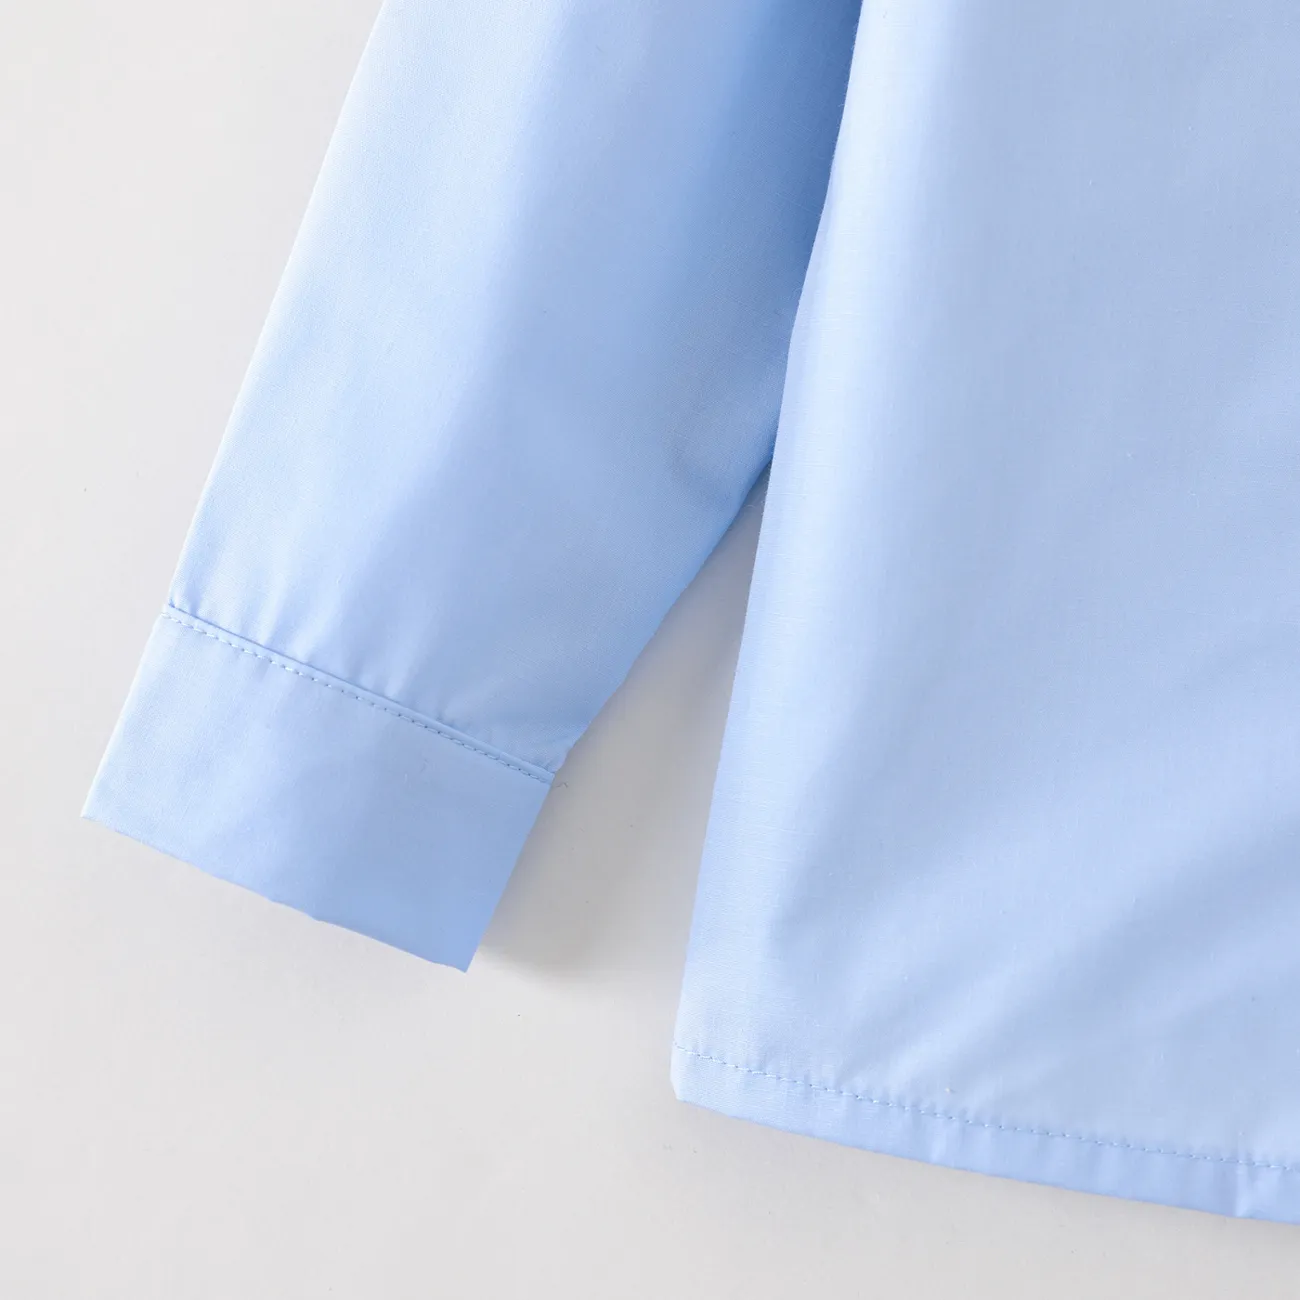 طفل صغير فتى / فتاة الزي المدرسي قميص طويل الأكمام الصلبة أزرق big image 1